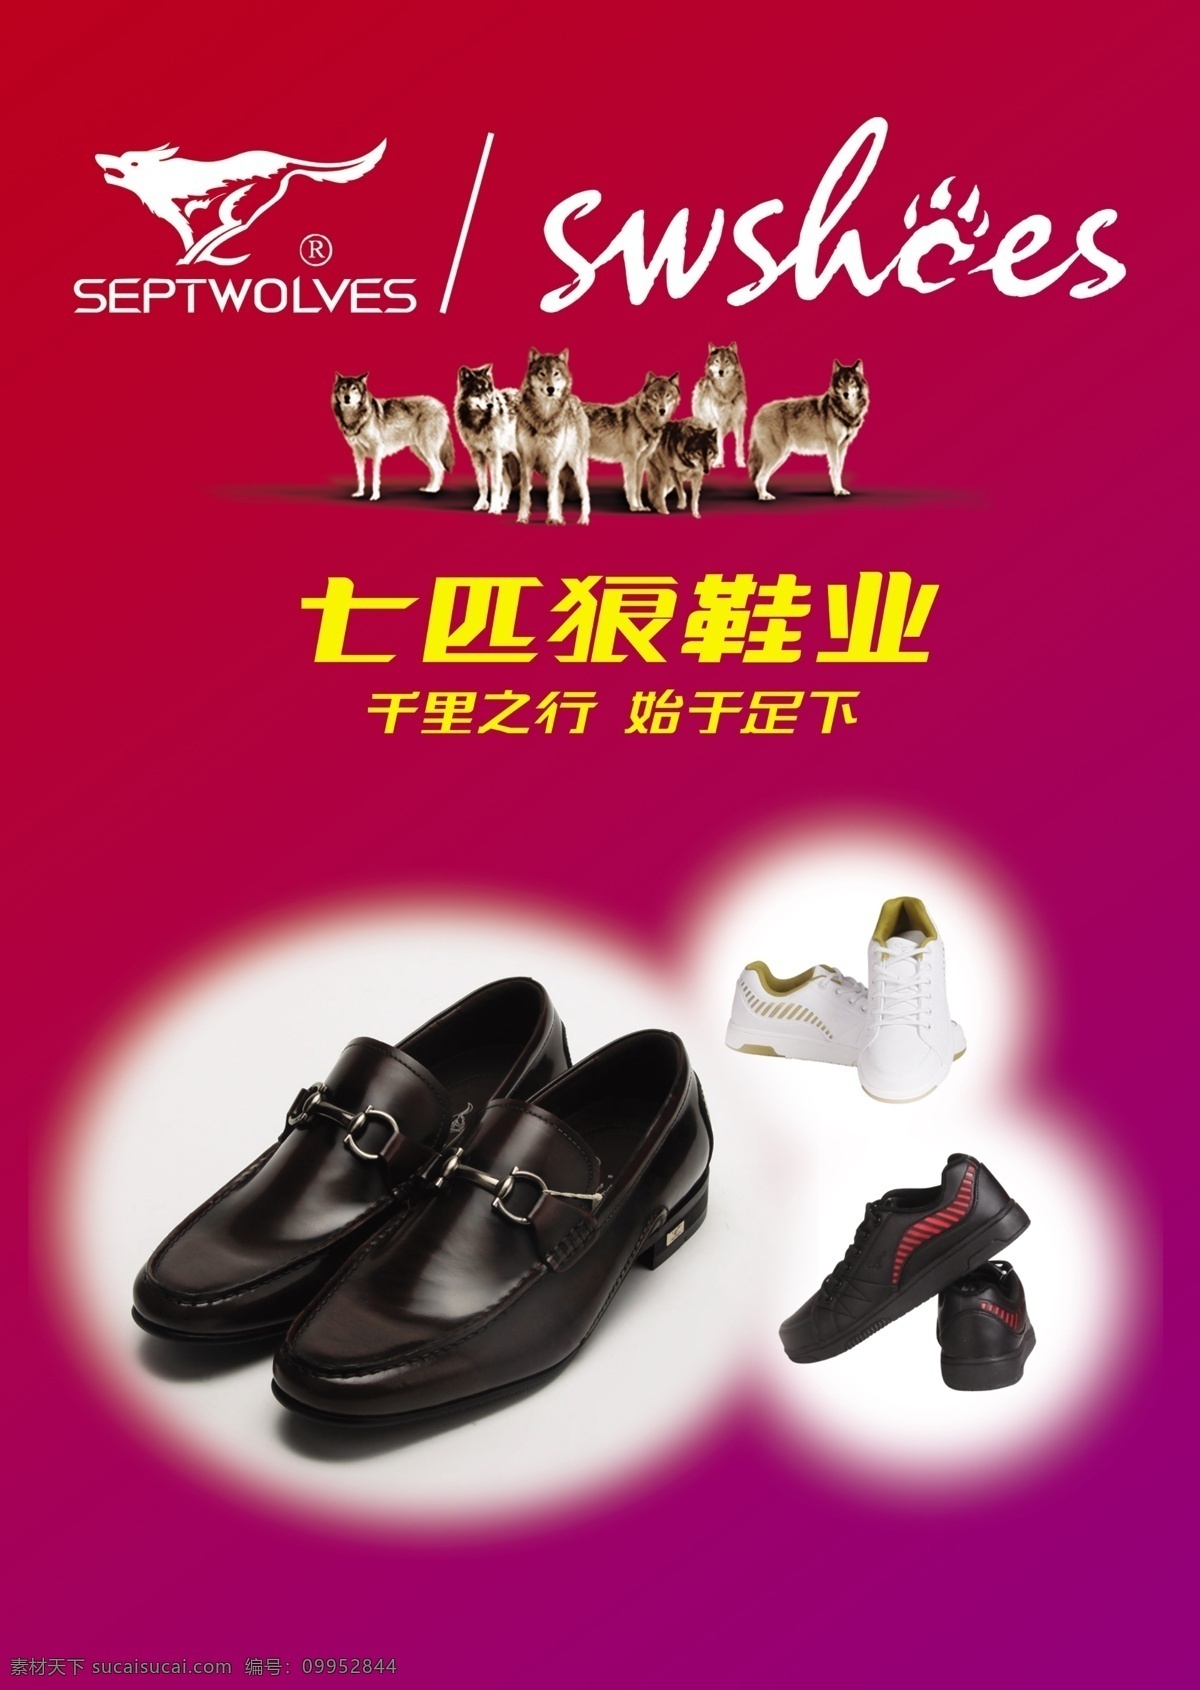 七匹狼 鞋业 海报 七匹狼鞋业 鞋子 七匹狼标志 广告语 狼 标识 广告设计模板 源文件